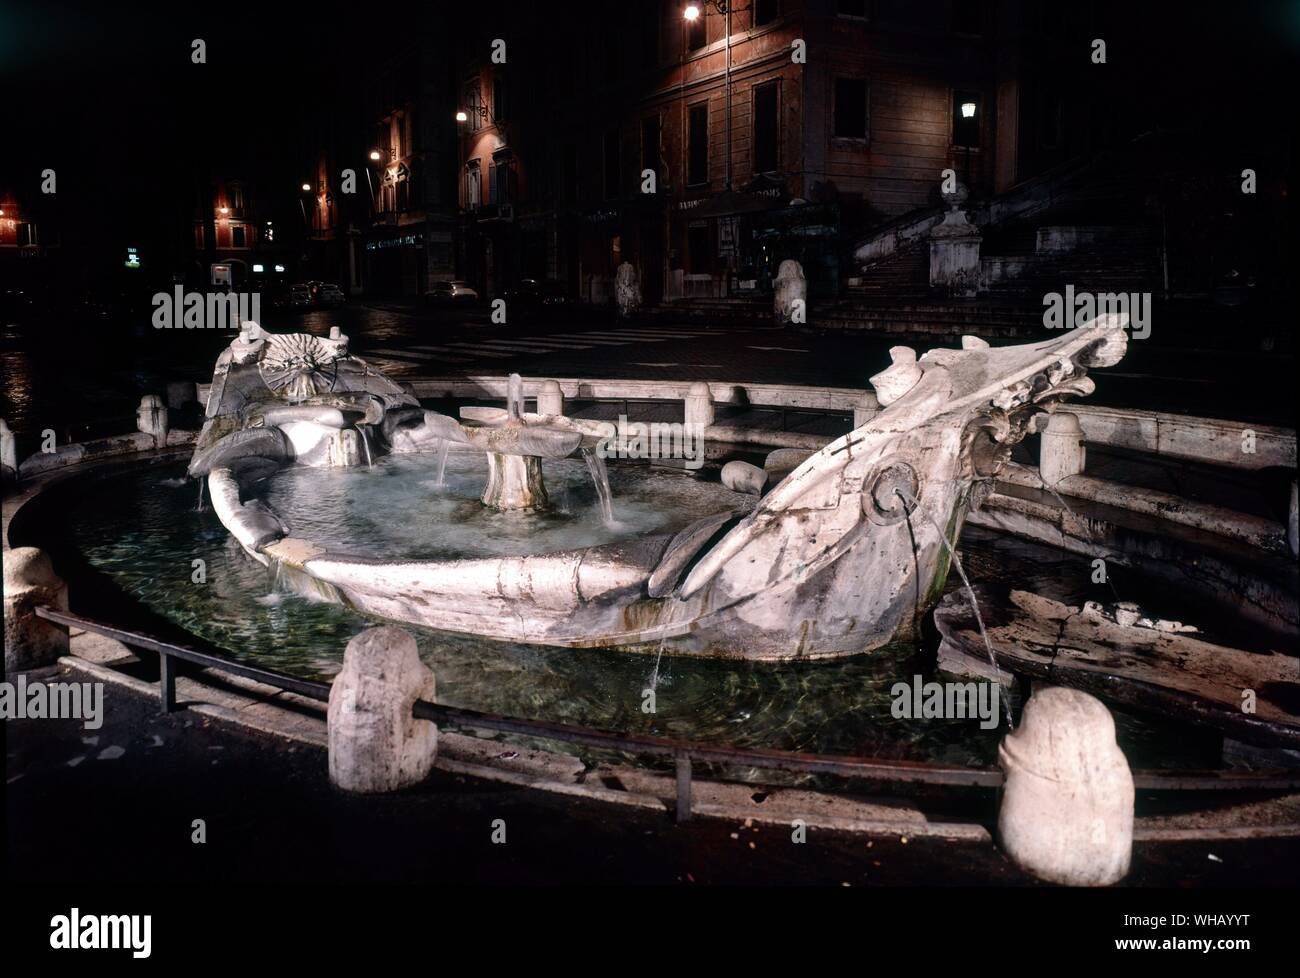 Die Gewässer von Rom durch H. v. Morton. La Barcaccia auf der Piazza di Spagna. Pl. 4, S. 44. Auf der Piazza an der Unterseite ist der frühen barocken Brunnen der Barcaccia (Das hässliche Boot), oft zu Pietro Bernini, Vater eines berühmten Sohn Gian Lorenzo Bernini, der auf die Dekoration zusammengearbeitet, gutgeschrieben. Einer Legende nach, Papst Urban VIII. war ein Brunnen, an dem Ort, da er mit einem Boot hier von einer Flut von den Tiber beeindruckt gebracht worden war. . Stockfoto